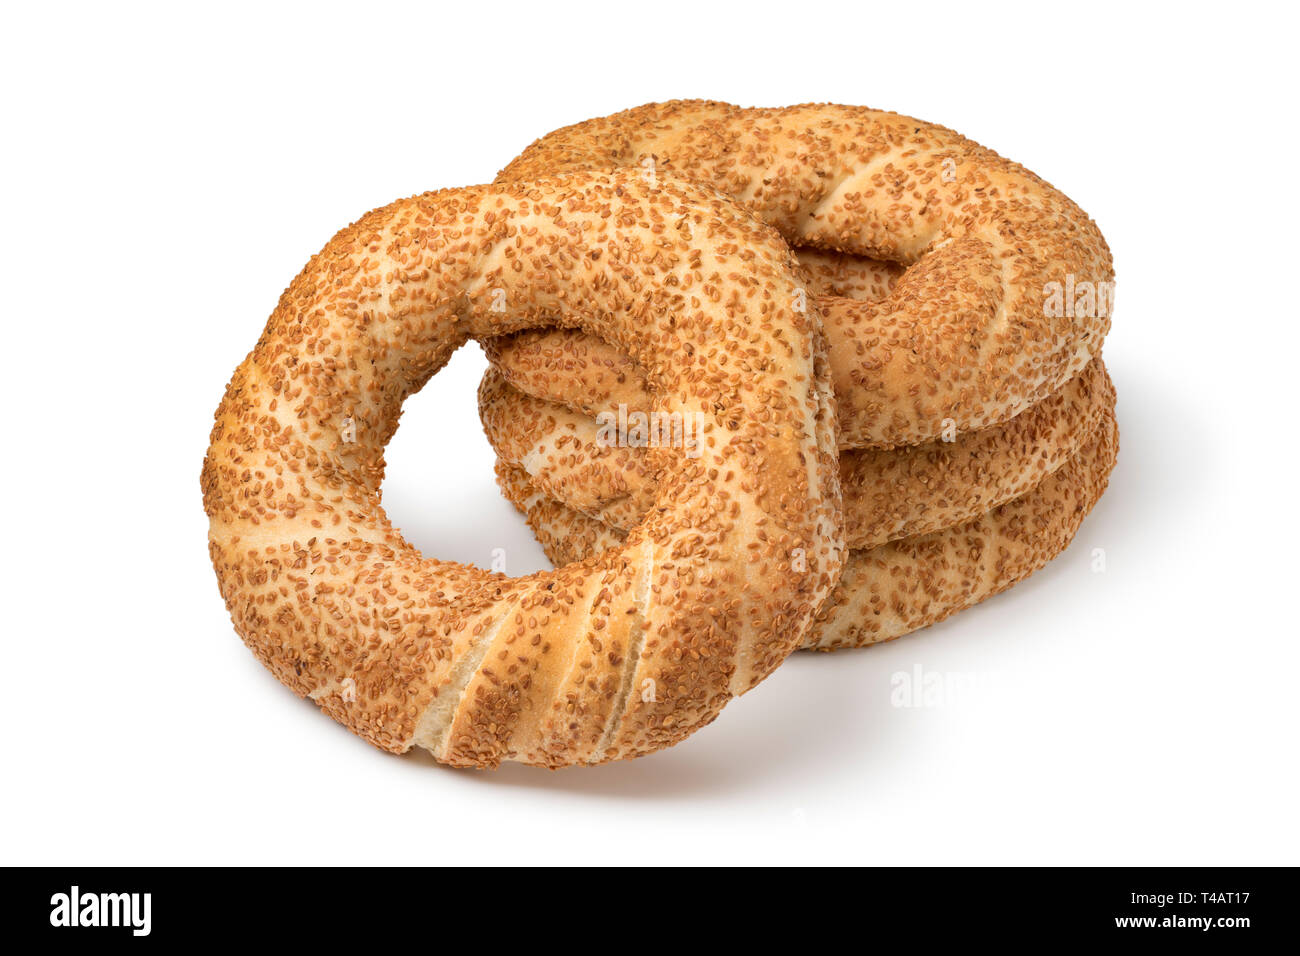 Stapel von traditionellen frisch gebackene Türkische simit Brot auf weißem Hintergrund Stockfoto